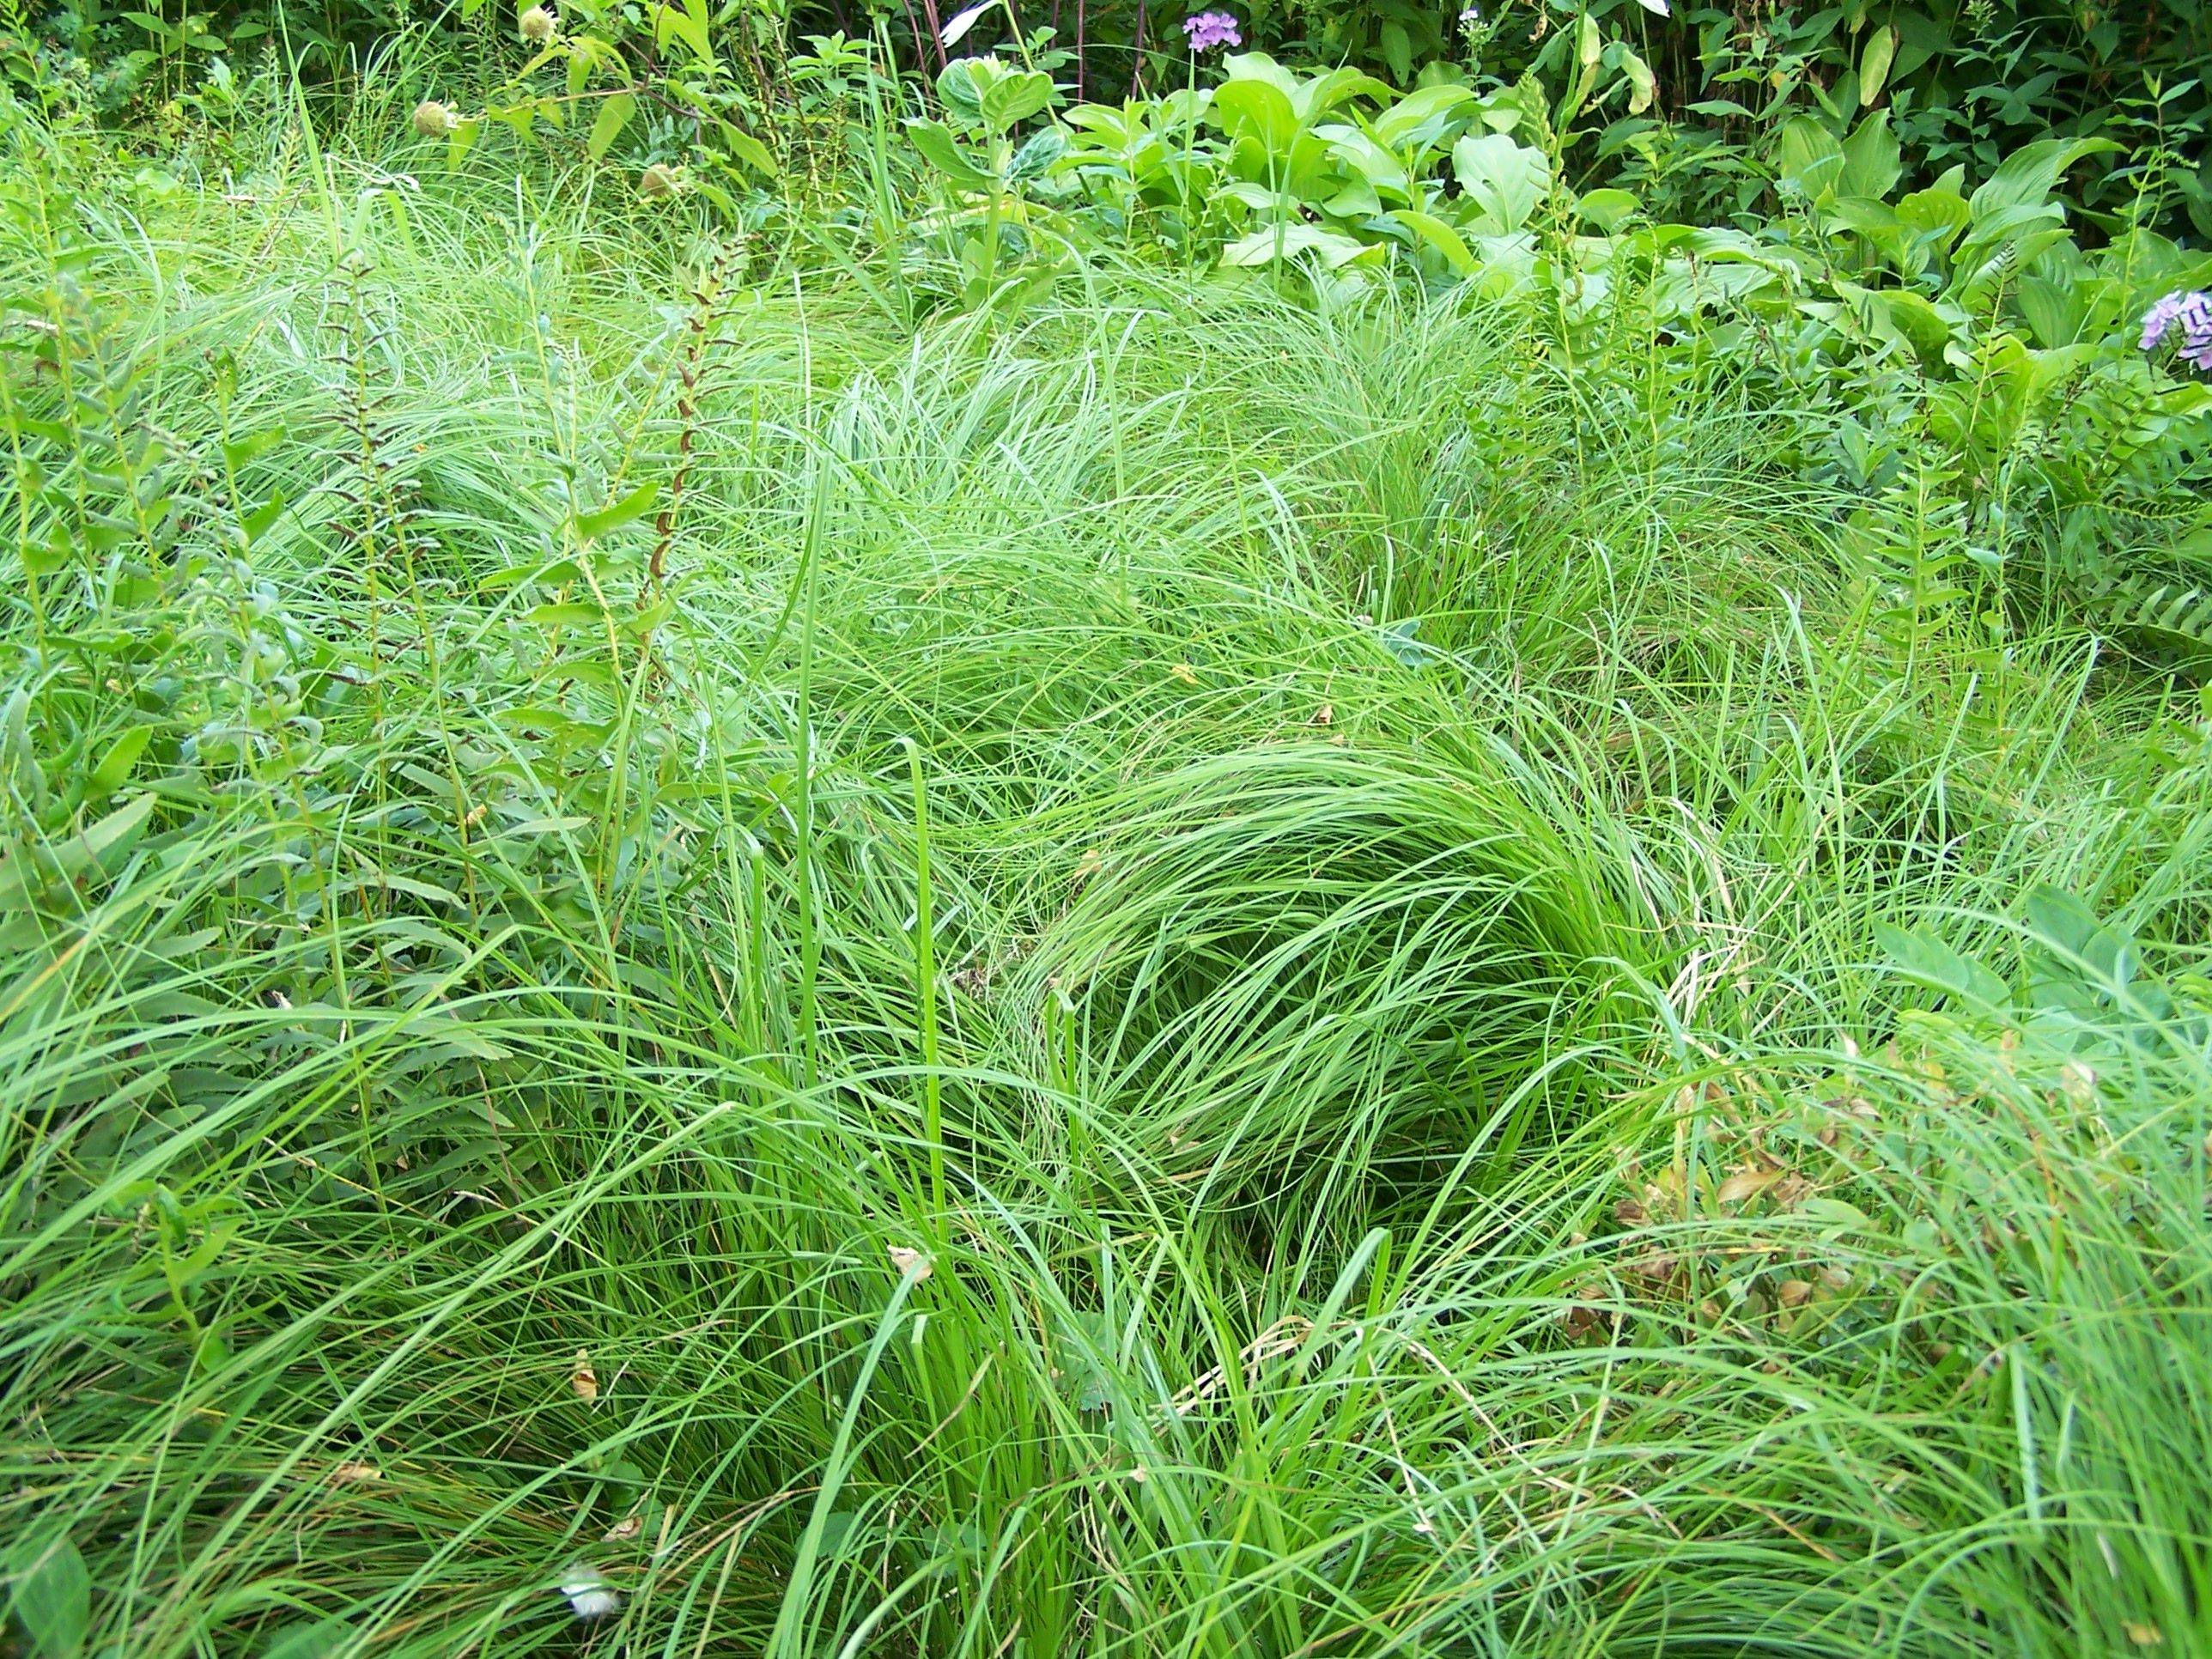 Growing Pennsylvania sedge (Carex pensylvanica) in a garden or as a lawn alternative 2